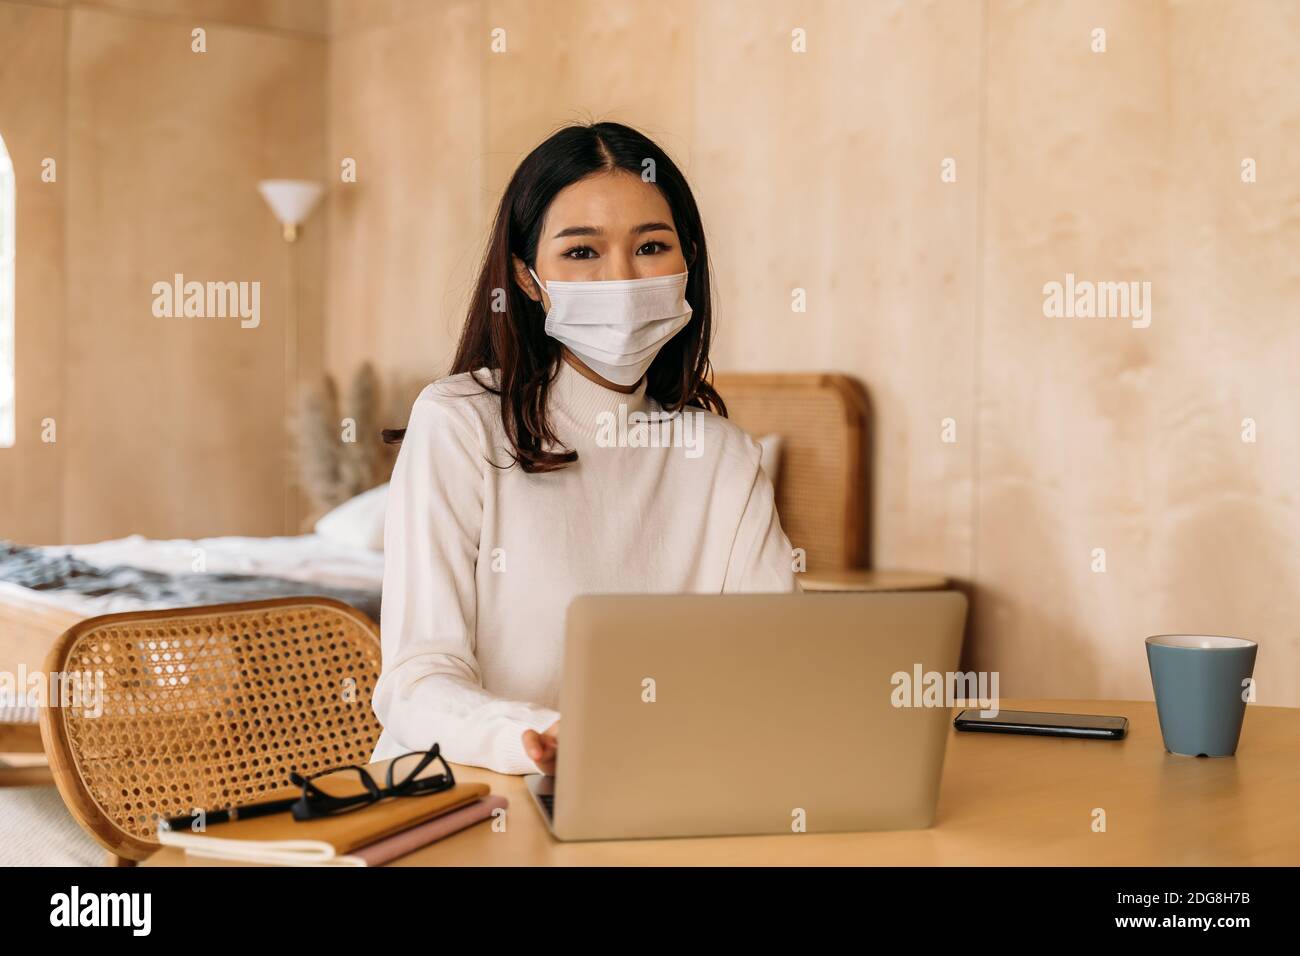 Junge Teenager asiatische Frau trägt Pullover mit Computer-Laptop arbeiten von zu Hause aus drinnen online. Attraktives Mädchen trägt eine Gesichtsmaske, um die Ausbreitung von Covid-19 - Coronavirus Pandemie zu verhindern. Speicherplatz kopieren Stockfoto